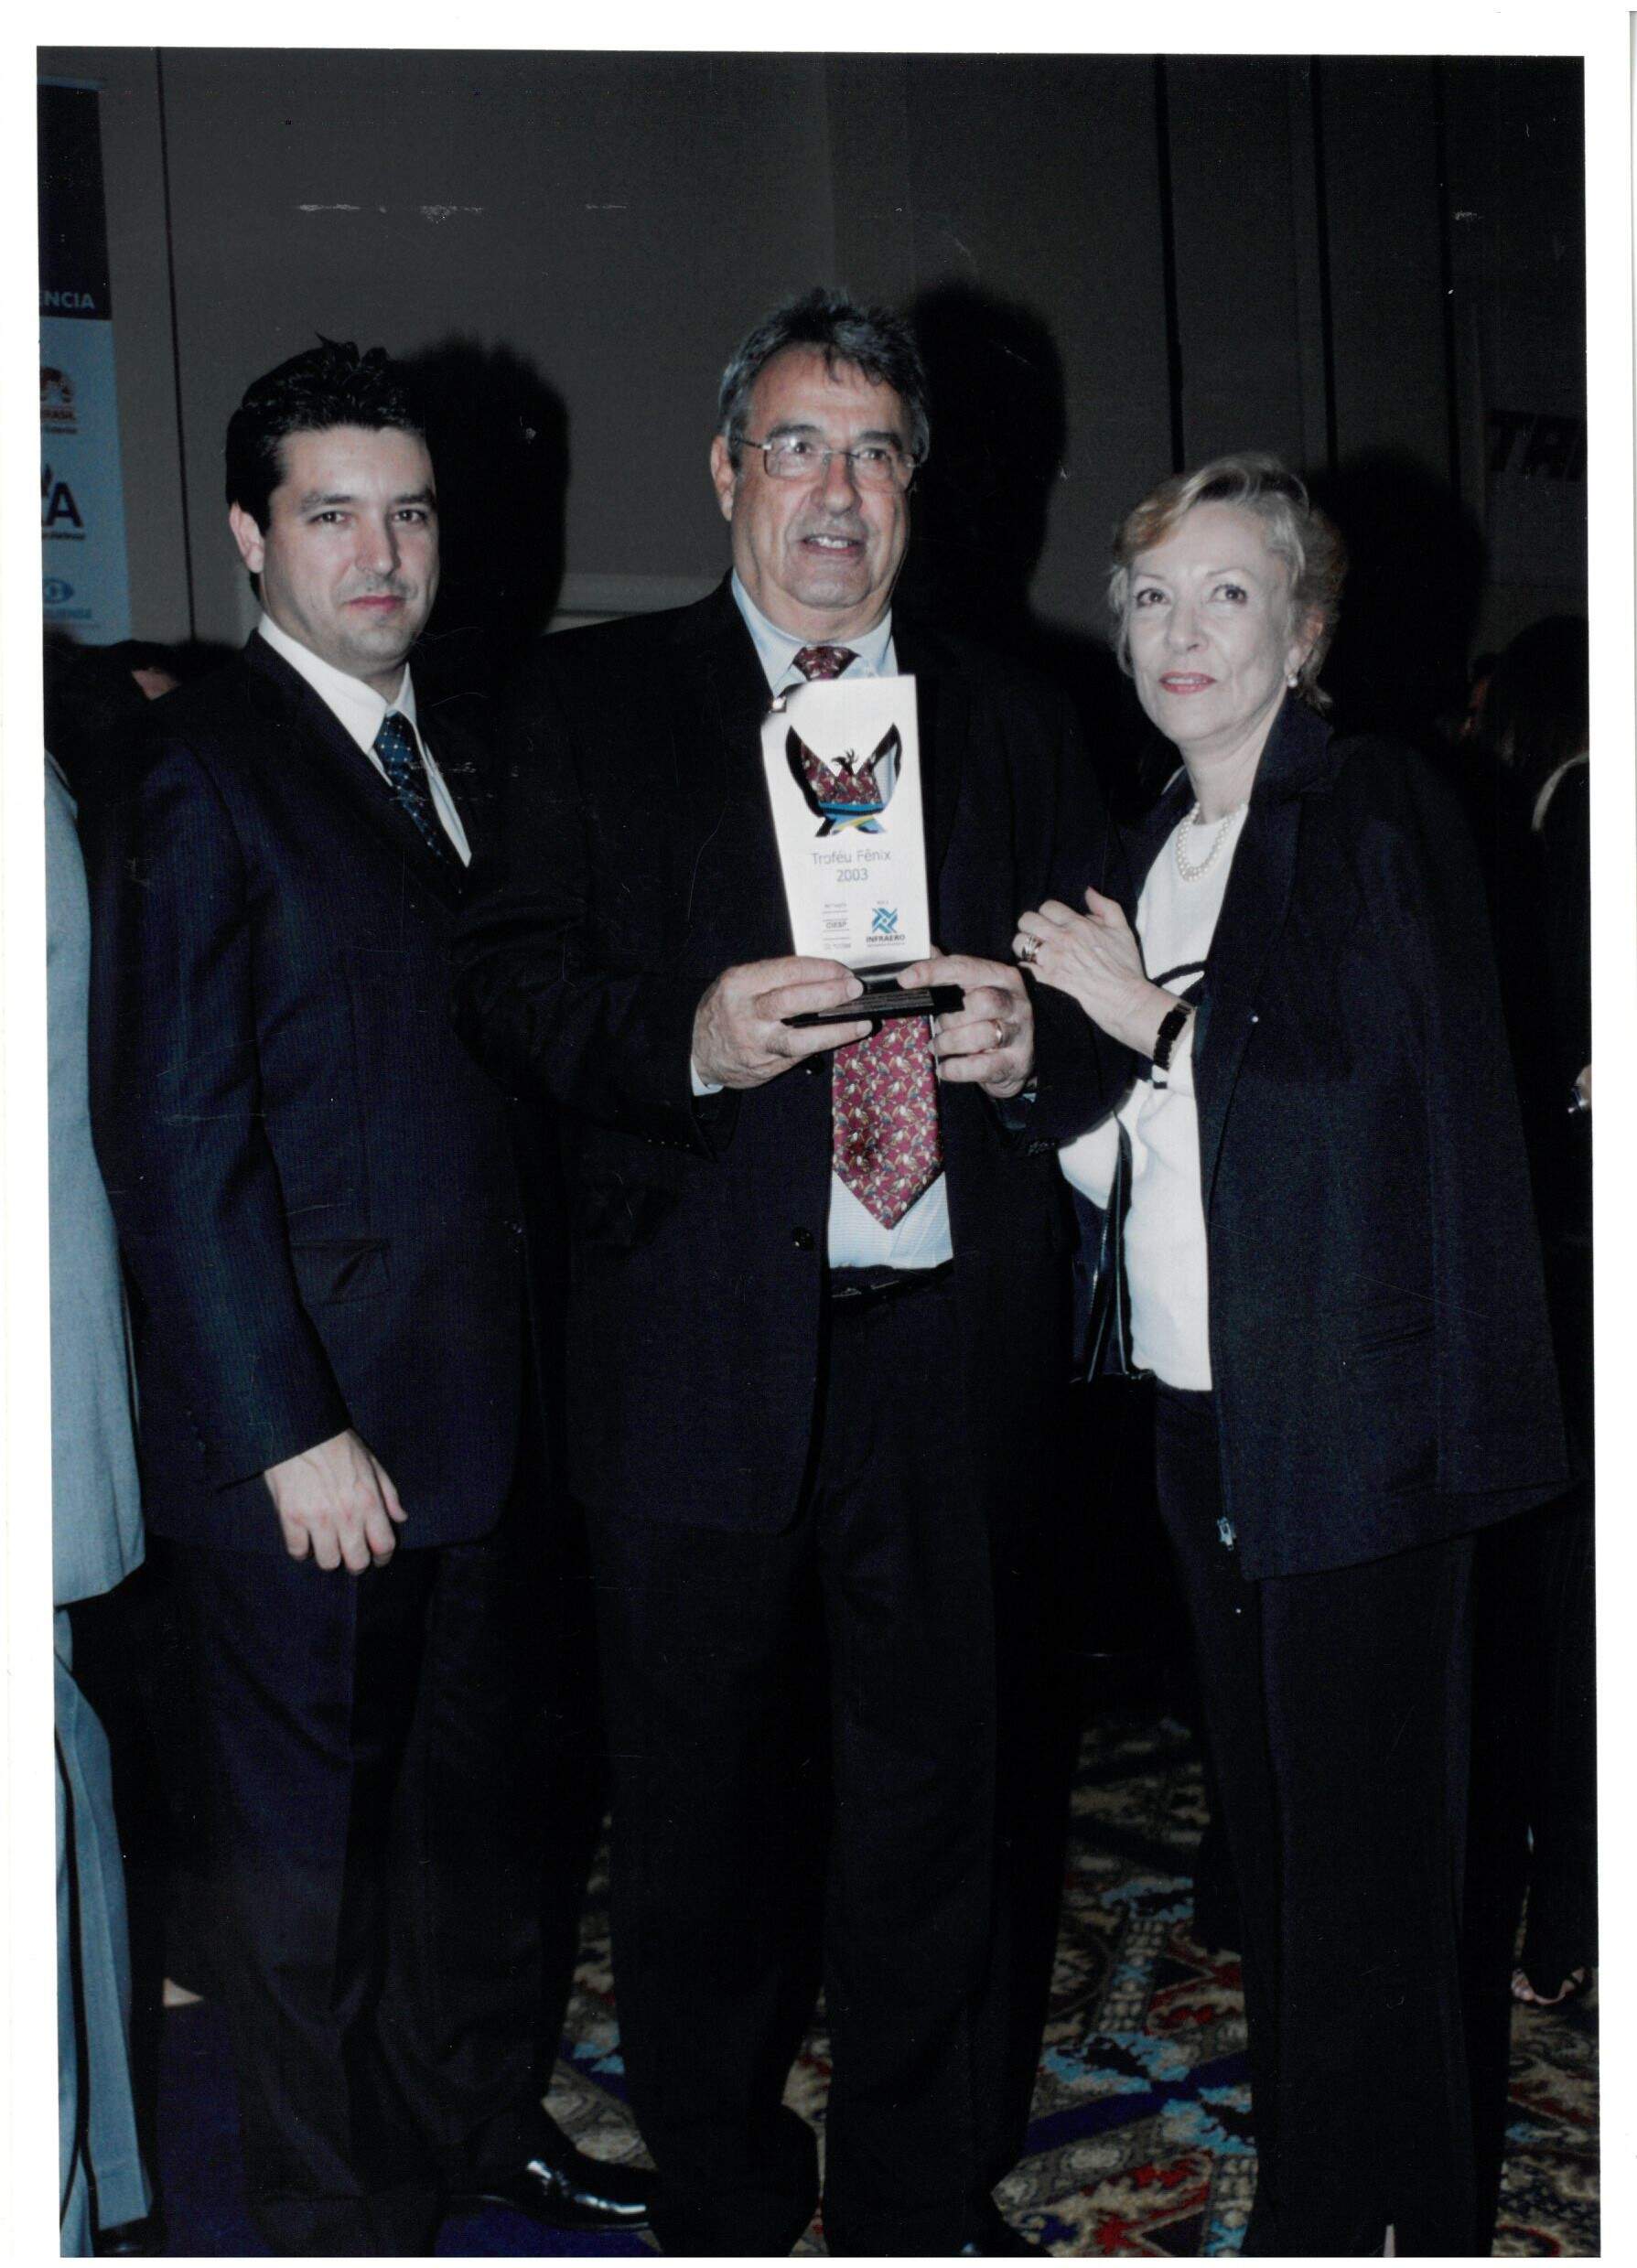 Sylvio Angelo Tavares ao centro, ao lado do filho Fabio Tavares e da esposa Vera Tavares. Foto: Arquivo de família